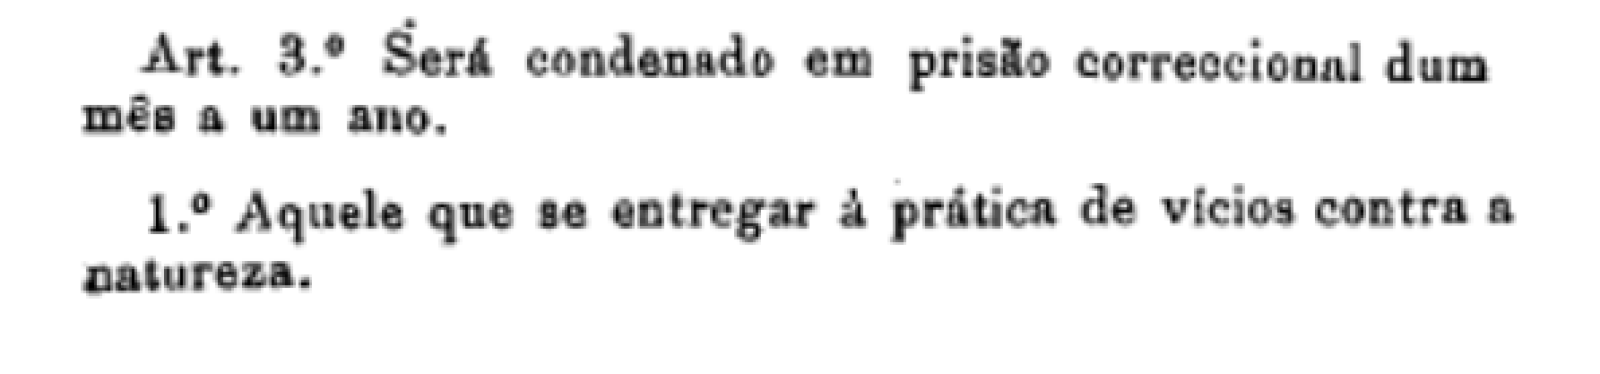 Fonte: Ministério da Justiça, 1912